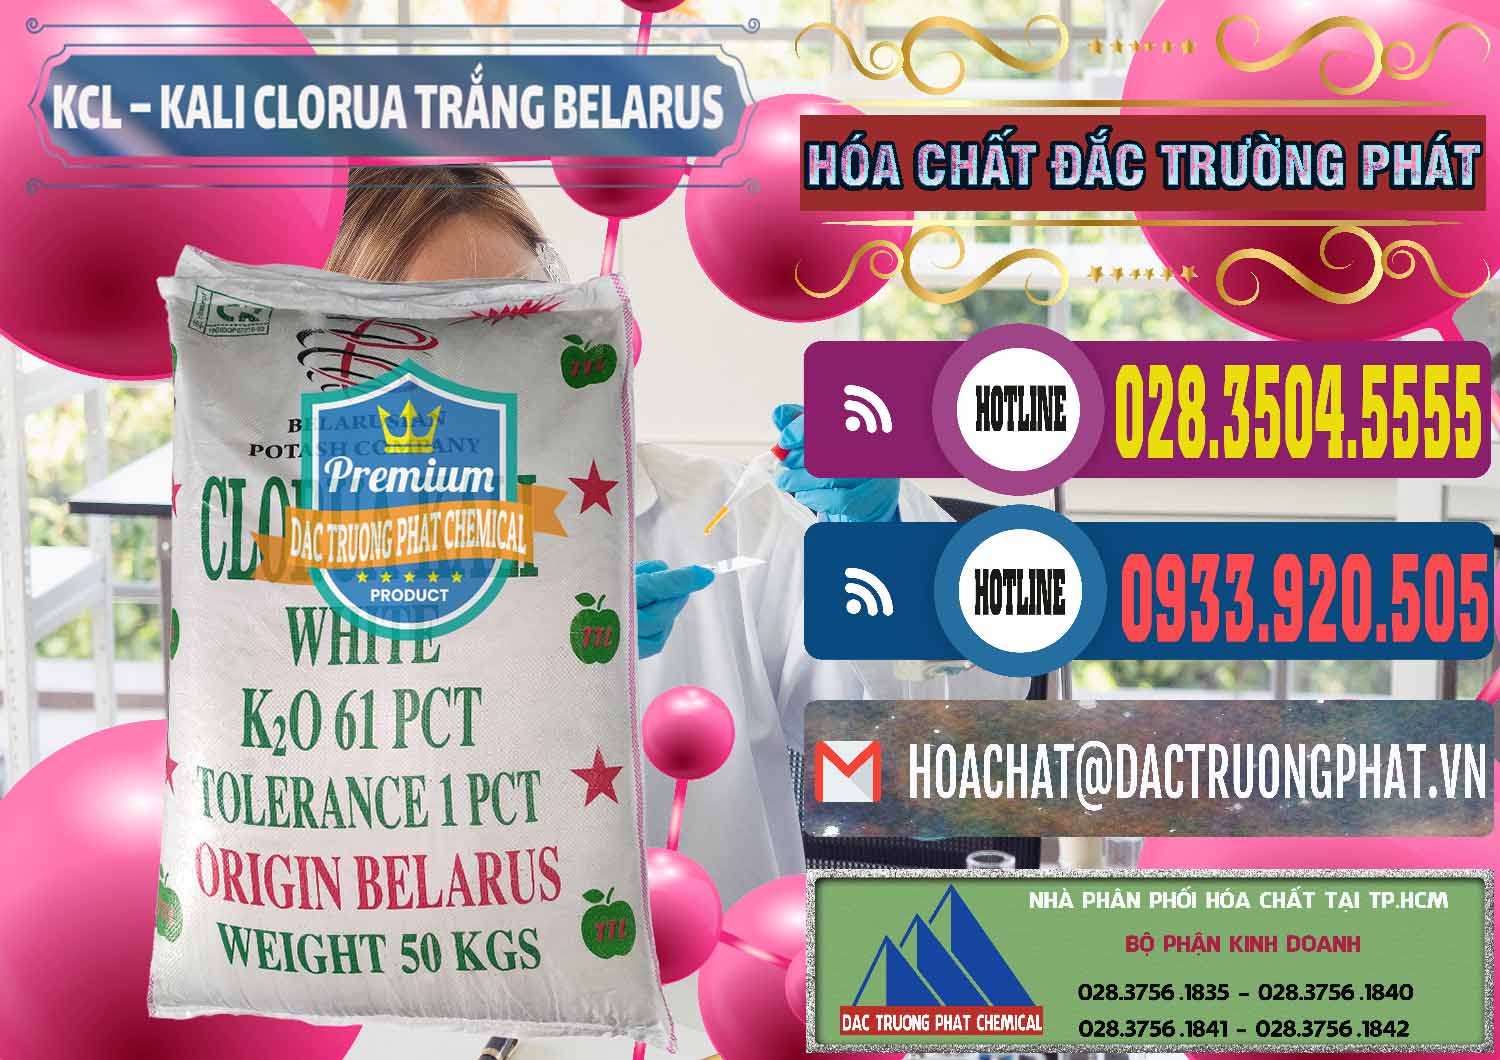 Nơi chuyên kinh doanh và bán KCL – Kali Clorua Trắng Belarus - 0085 - Nhà phân phối và cung cấp hóa chất tại TP.HCM - muabanhoachat.com.vn